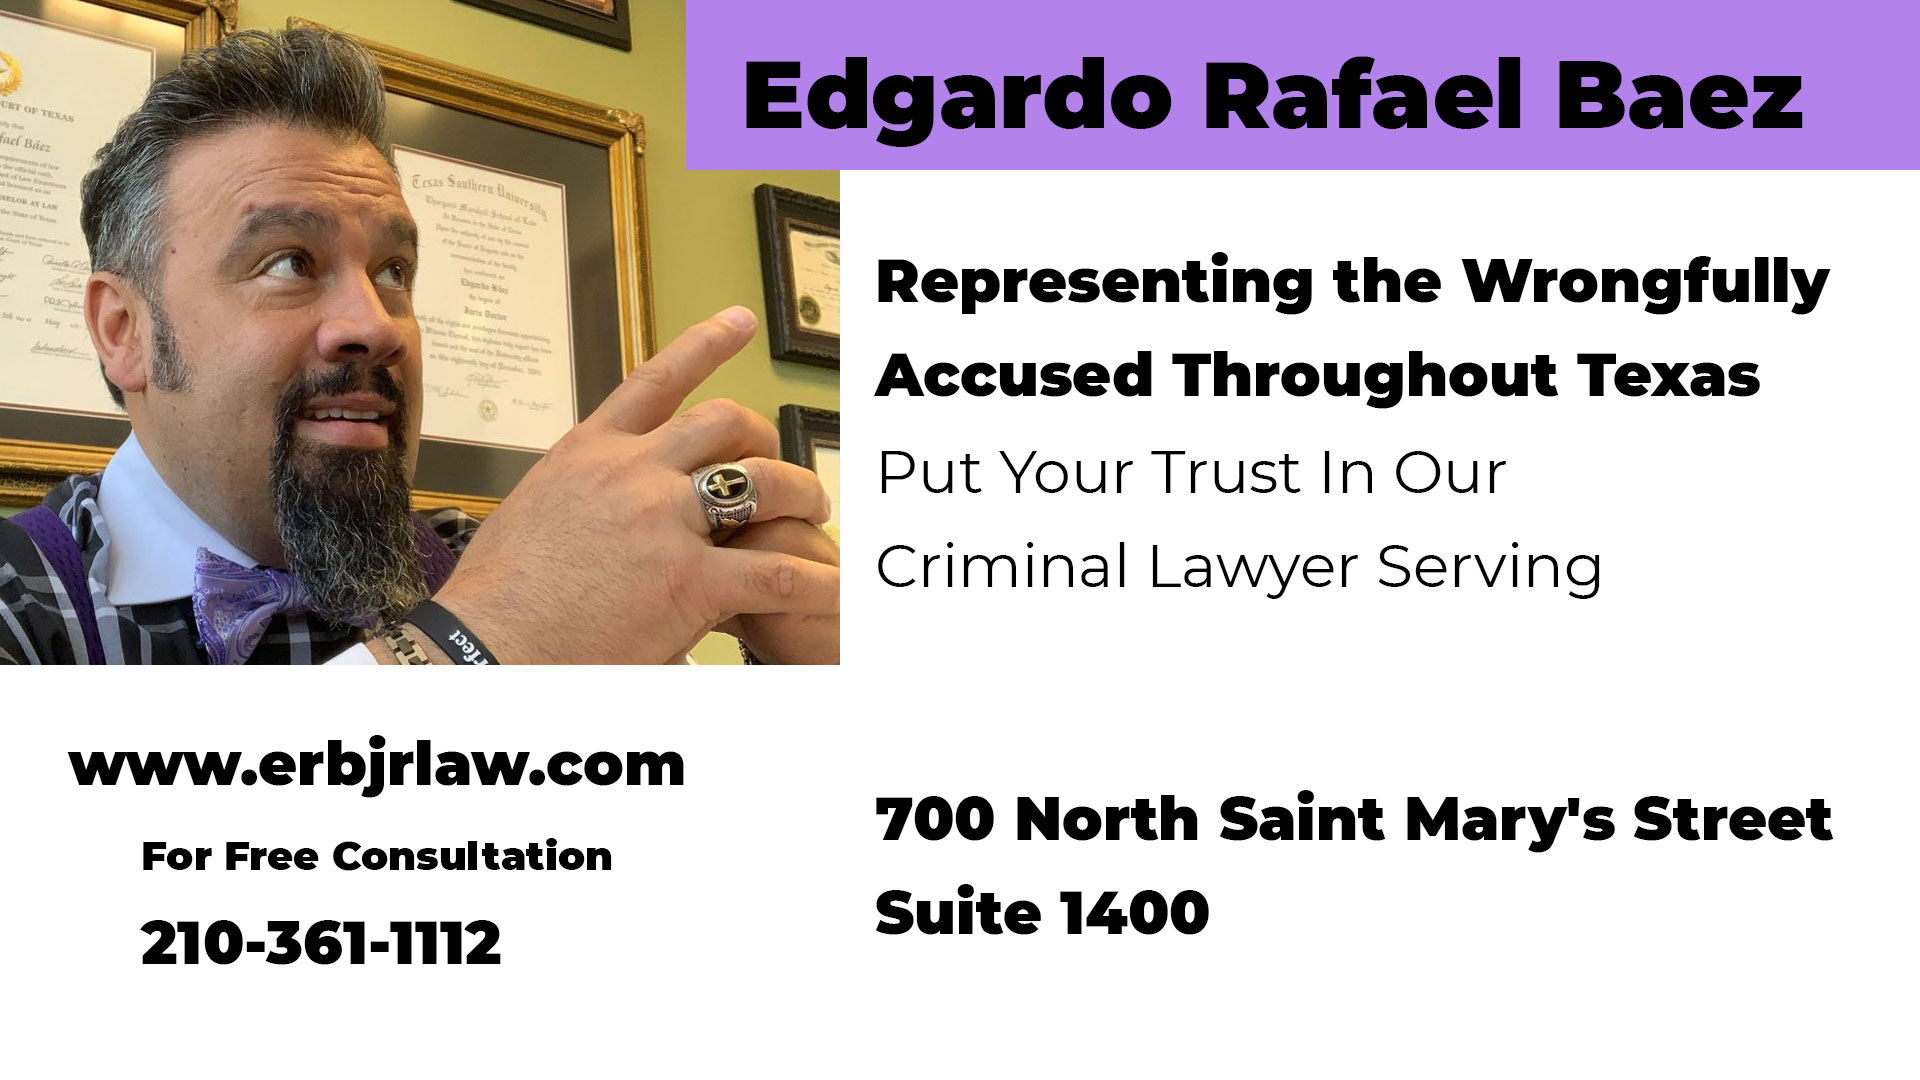 Edgardo Rafael Baez lawyer in san antonio